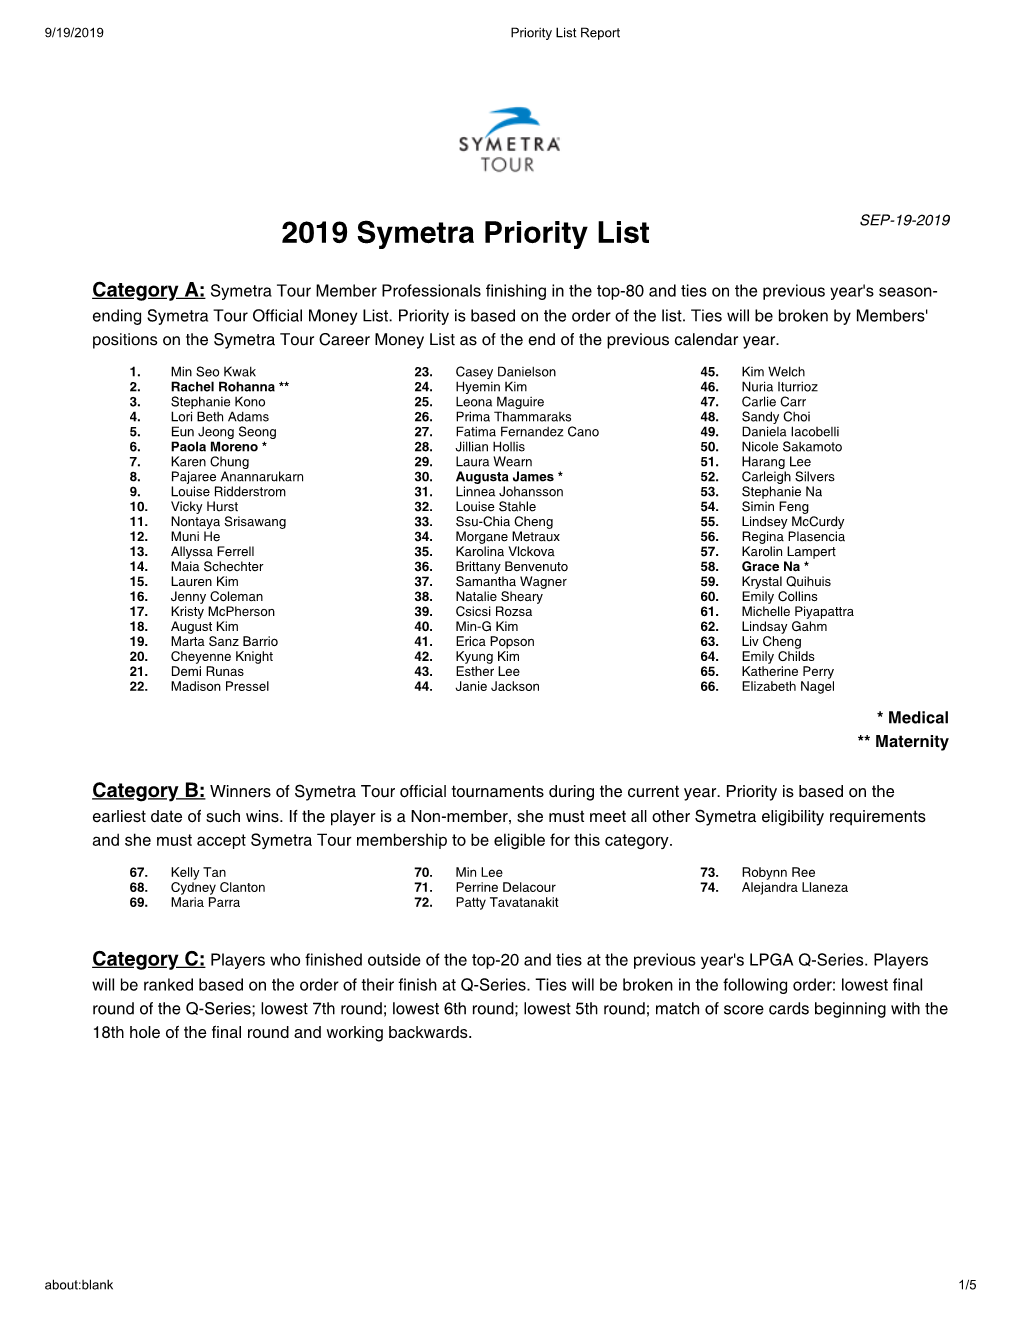 2019 Symetra Priority List SEP-19-2019